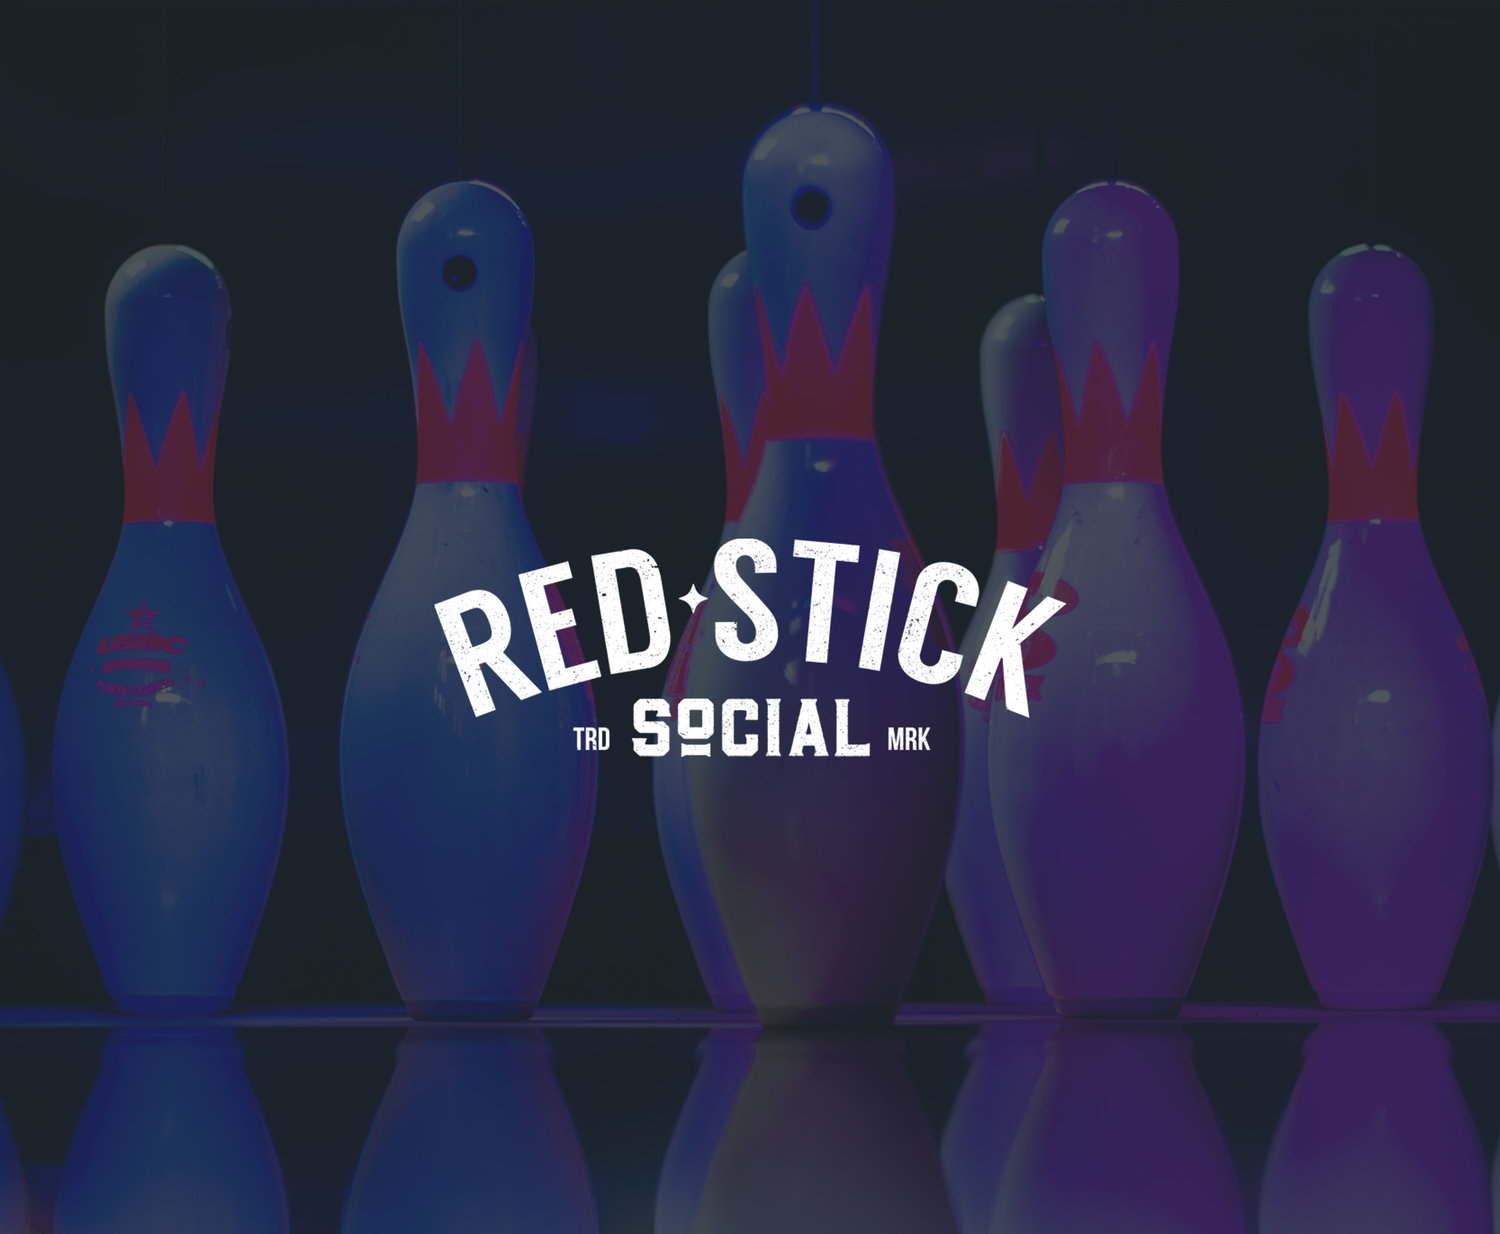 Red Stick Social  Brunswick Bowling